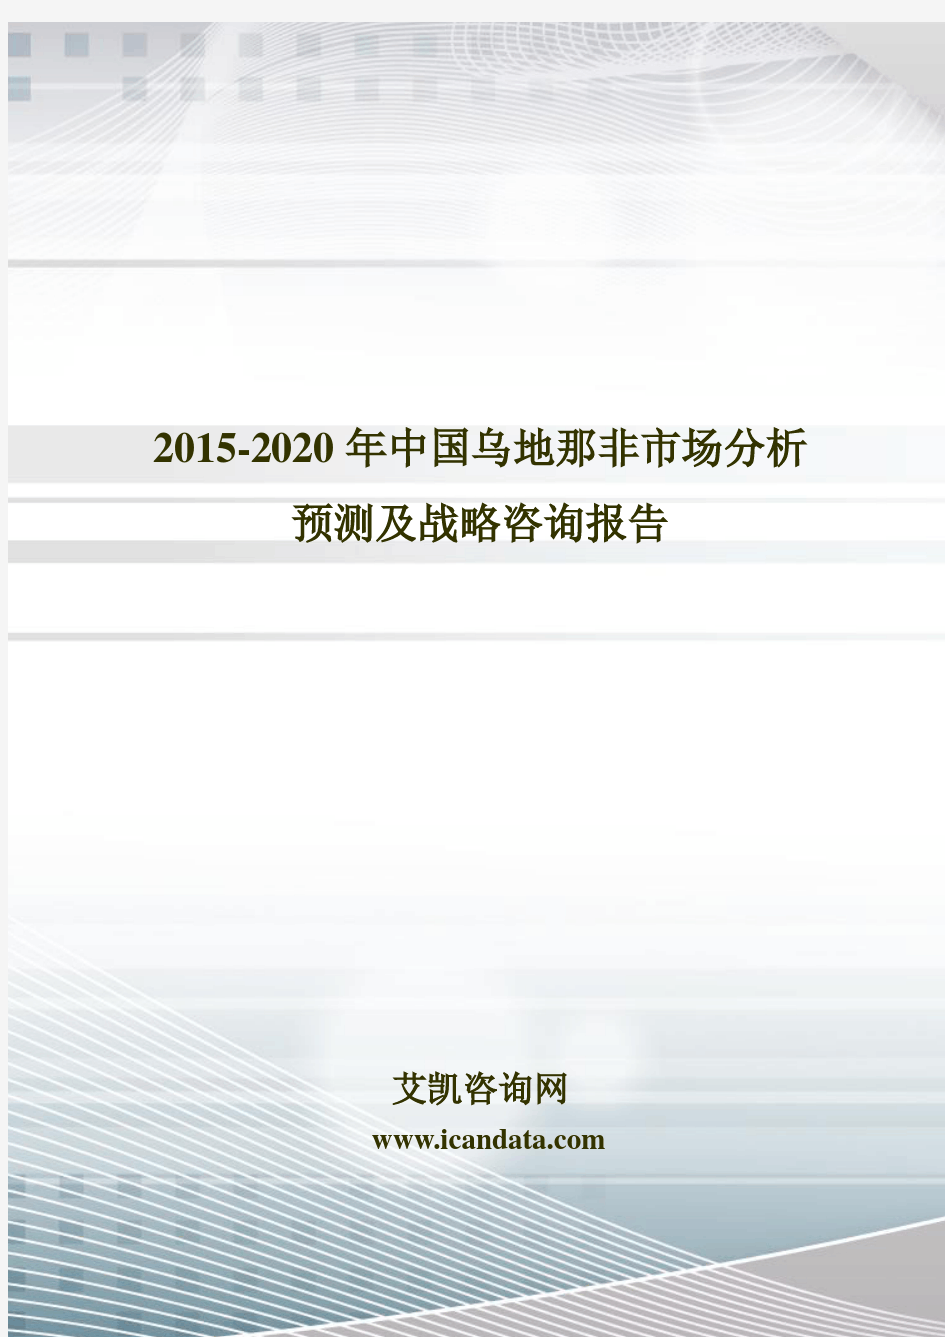 2015-2020年中国乌地那非市场分析预测及战略咨询报告